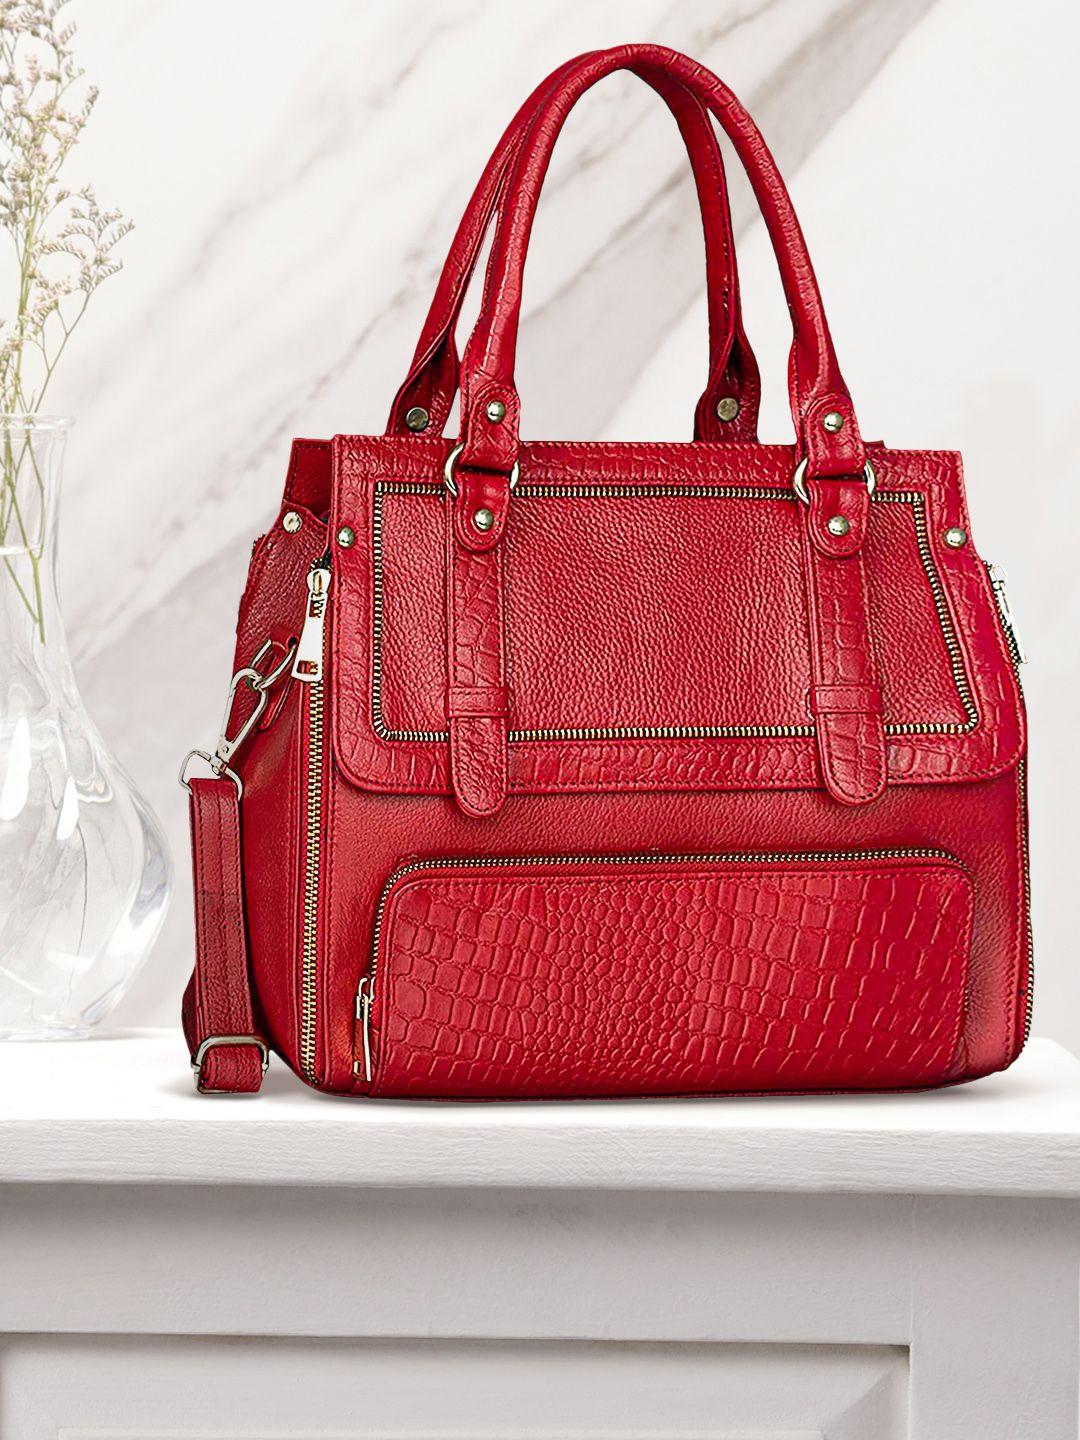 hileder red leather structured handheld bag